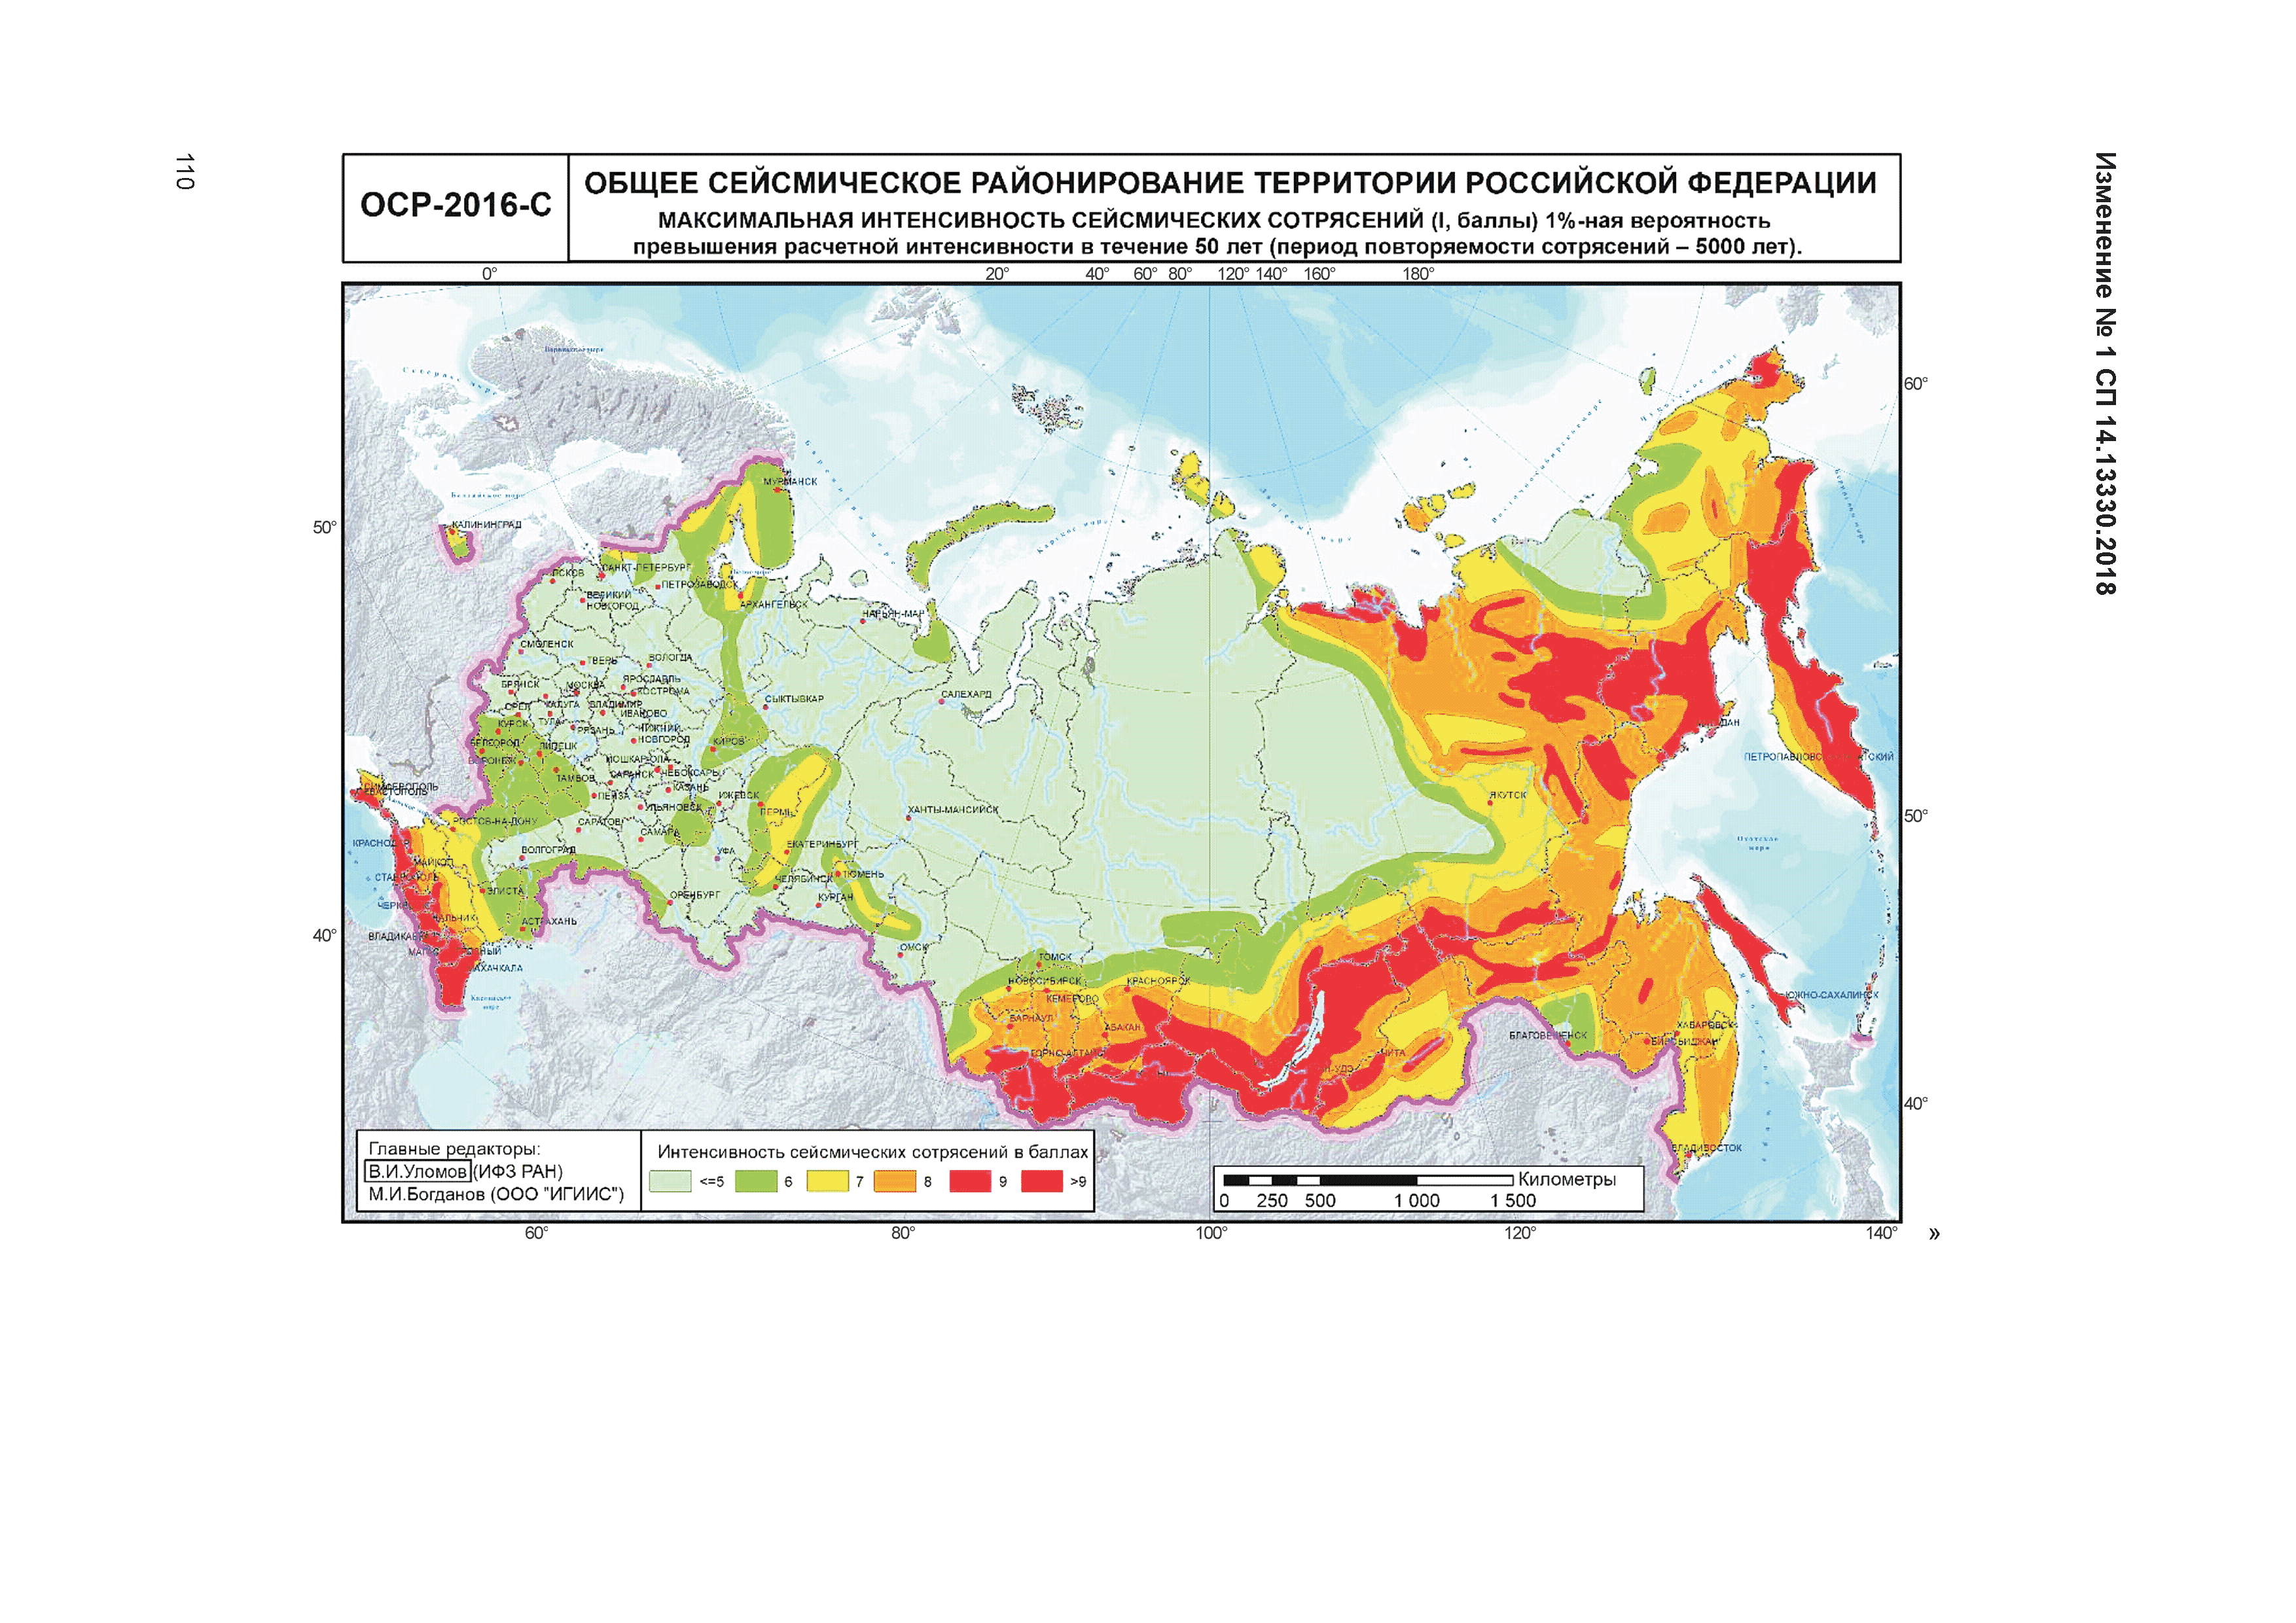 Сейсмическое районирование территории России ОСР-2016 карты